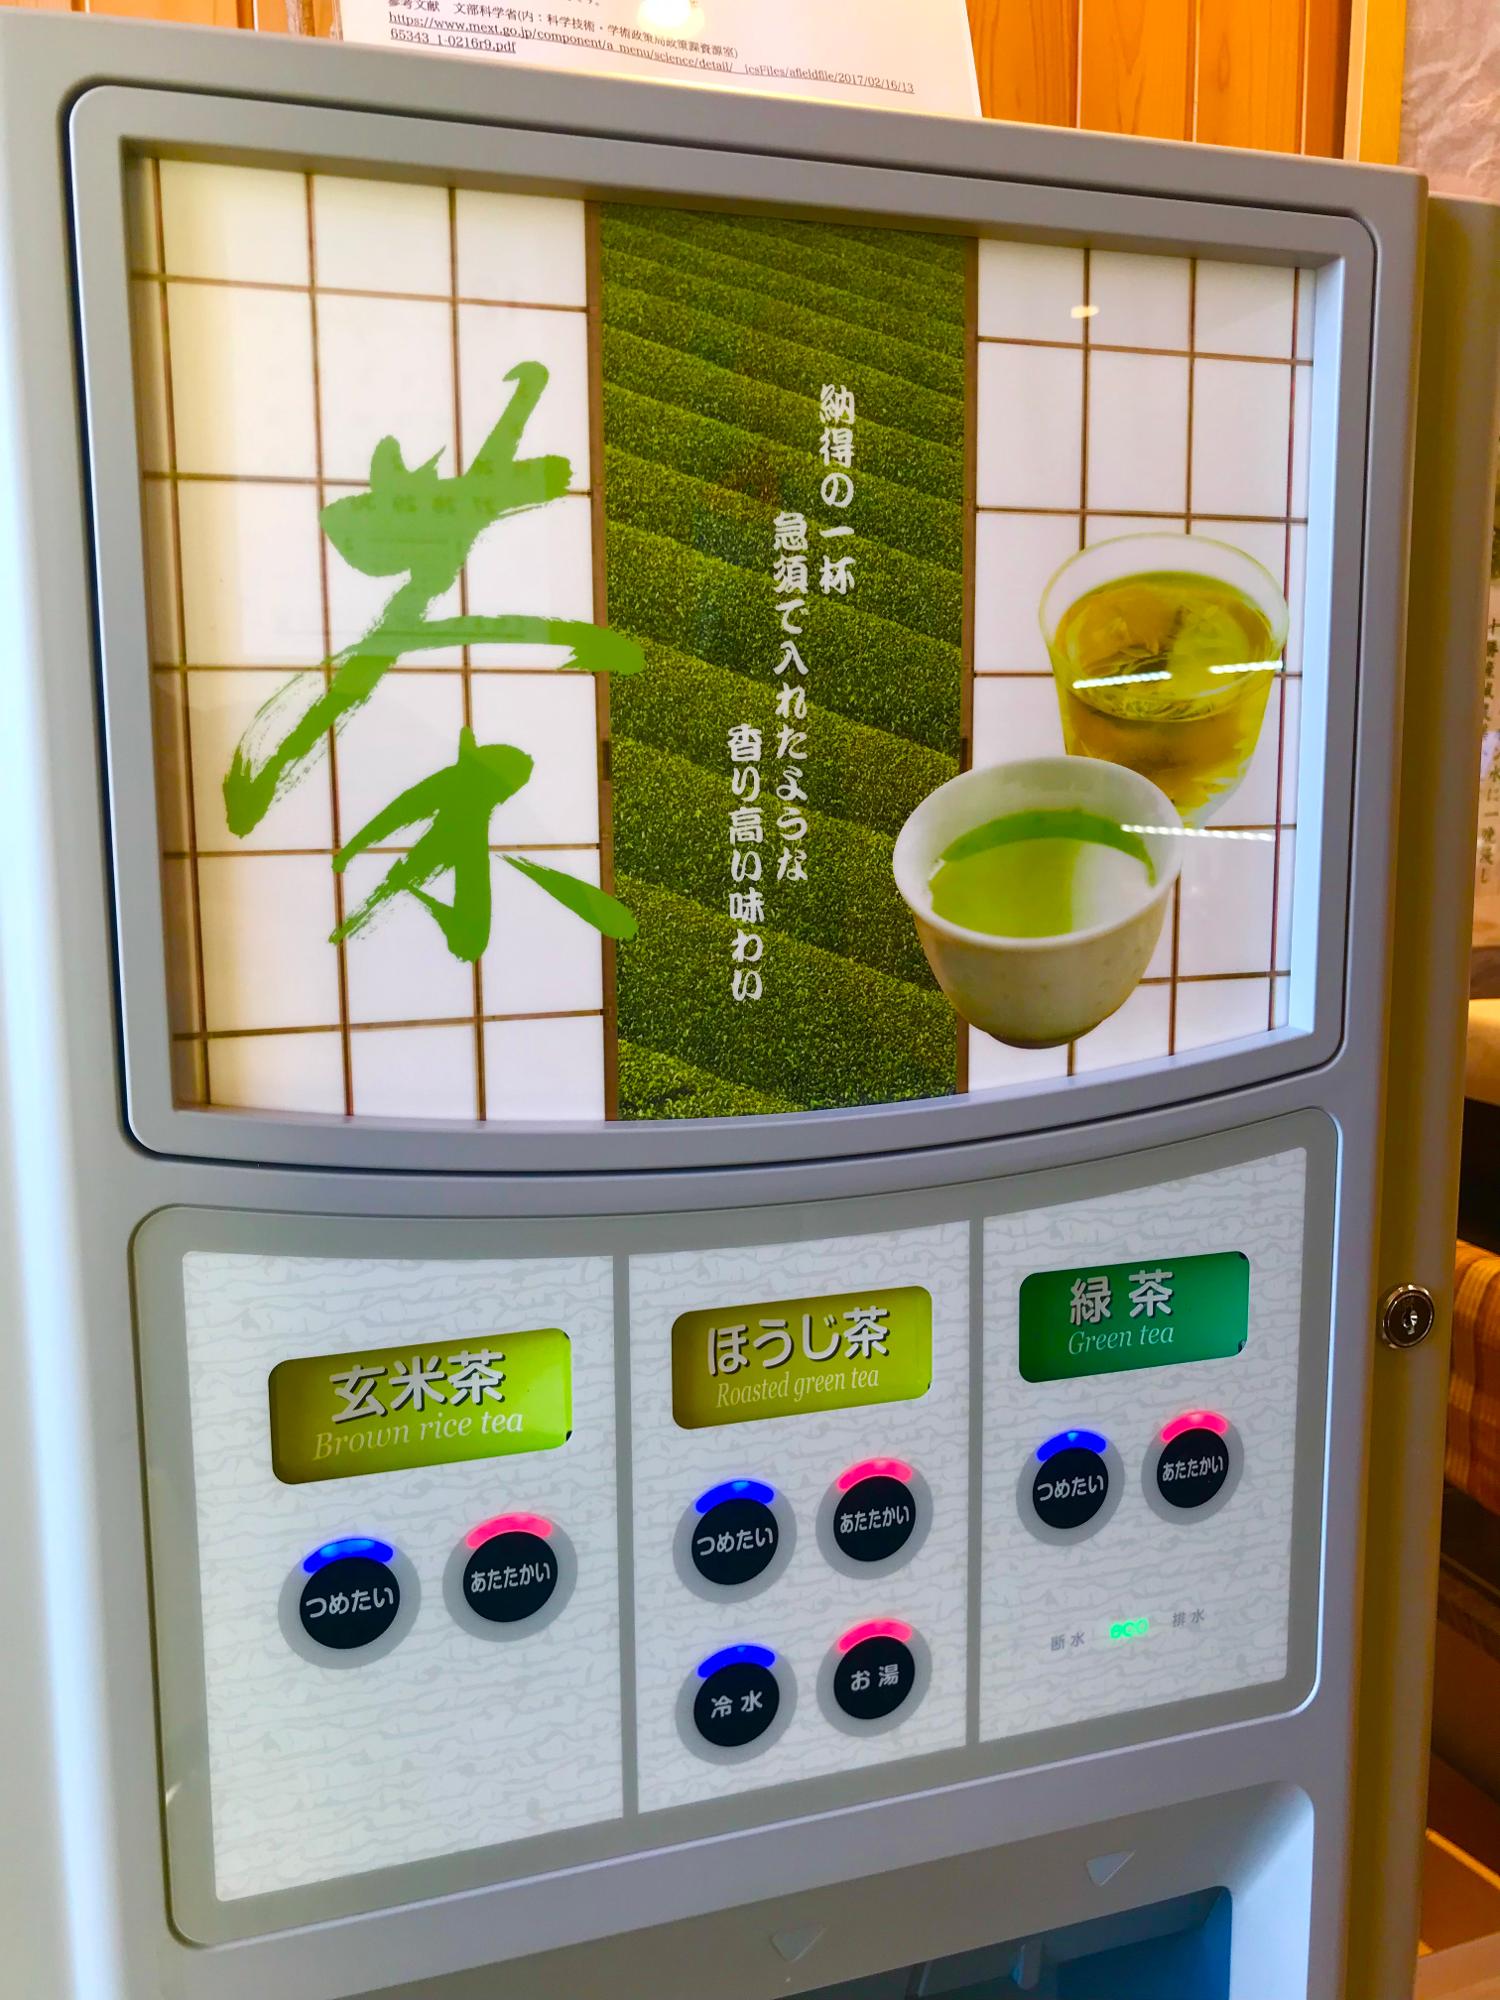 お好きな和菓子を購入して、玄米茶、ほうじ茶、緑茶をお好きなだけどうぞ